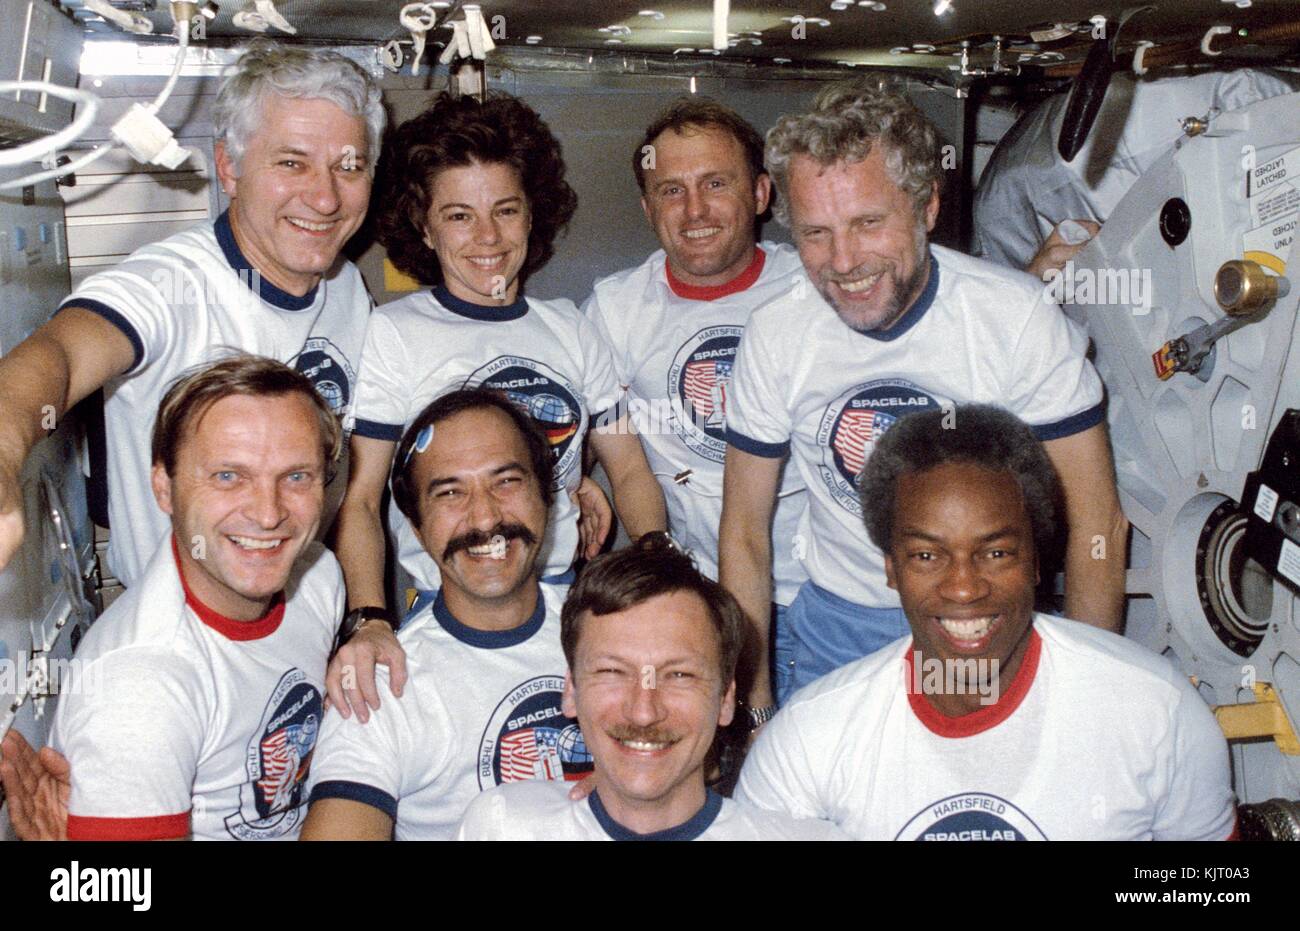 La NASA STS-61 space shuttle challenger missione Spacelab primo equipaggio (retro, l-r) astronauti americani henry hartsfield jr., bonnie dunbar, james buchli, astronauta tedesco reinhard furrer del Centro aerospaziale tedesco, (anteriore, l-r) astronauta tedesco Ernst messerschmid del Centro aerospaziale tedesco, olandese astronauta Wubbo Ockels dell'Agenzia spaziale europea e astronauti americani steven nagel e guion bluford posano per una foto di gruppo mentre in volo ottobre 30, 1985 in orbita intorno alla terra. (Foto di foto nasa via planetpix) Foto Stock